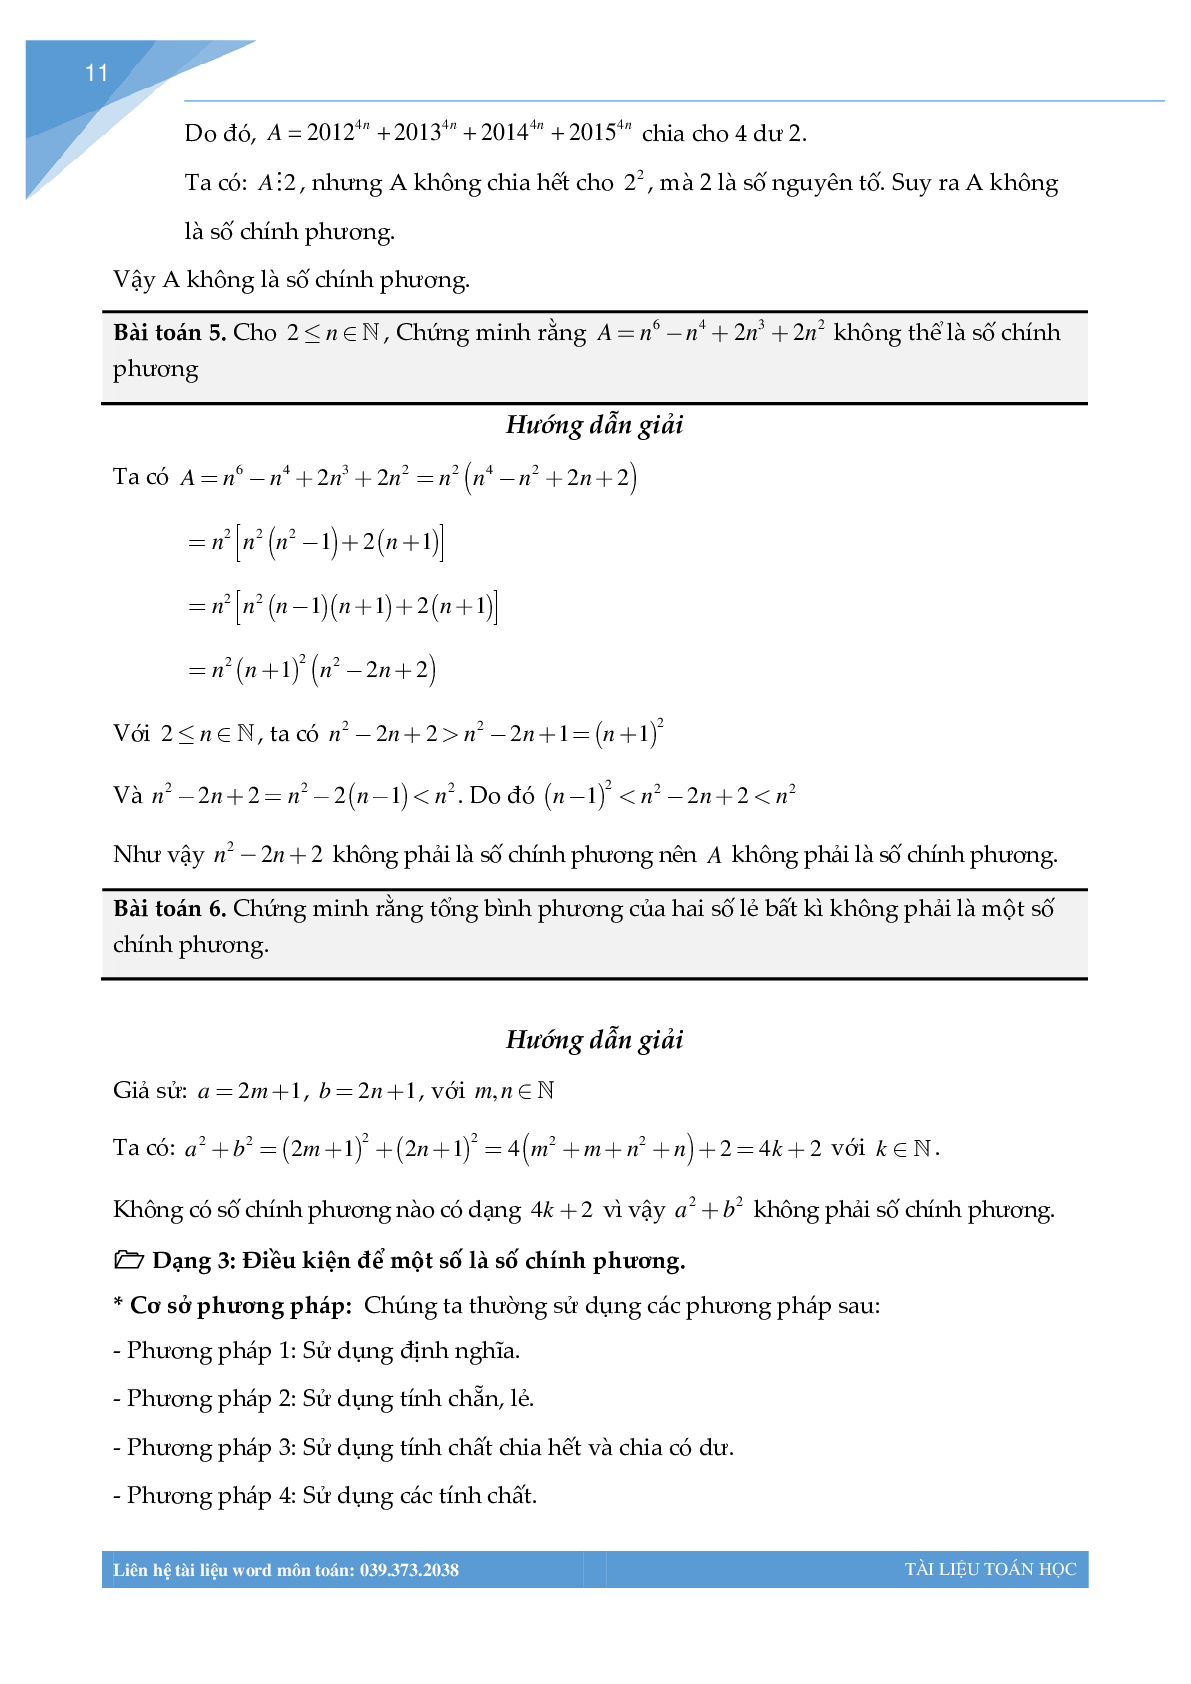 Chuyên đề số chính phương bồi dưỡng học sinh giỏi (trang 9)